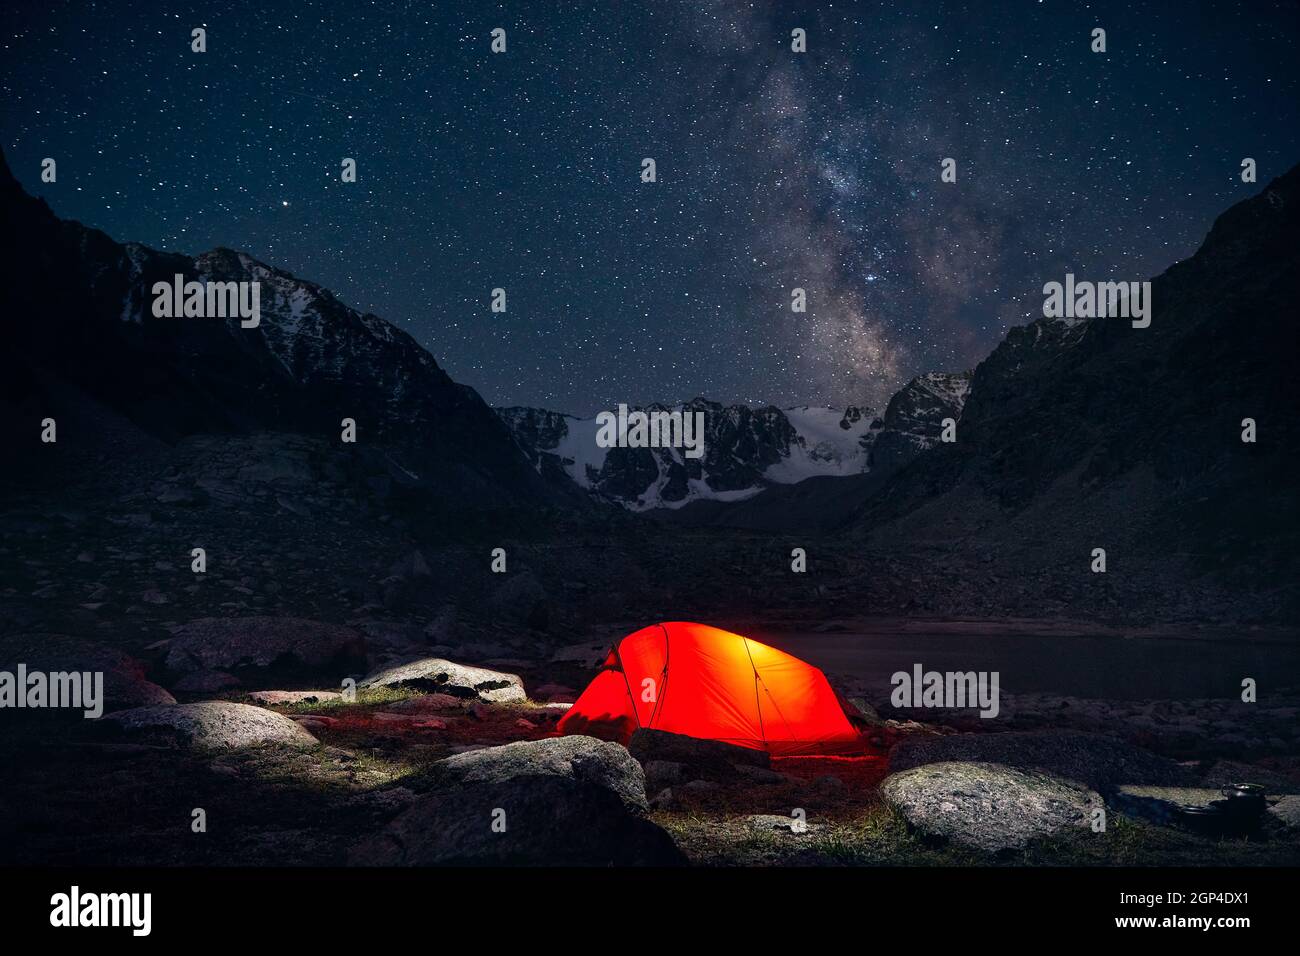 Tente orangée avec lumière au camping dans les montagnes sous ciel nocturne avec étoiles Banque D'Images